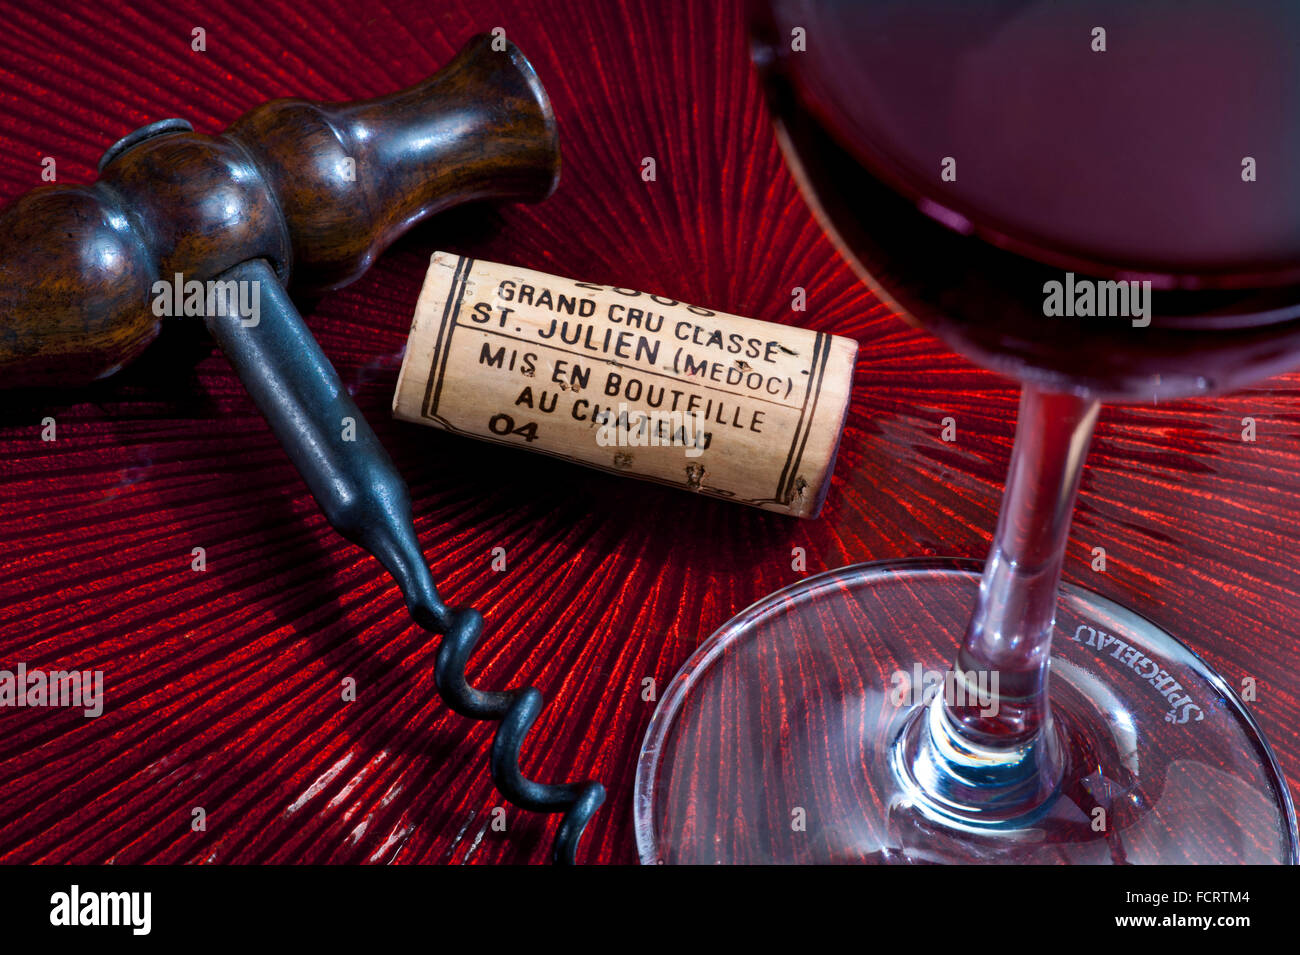 St Julien Médoc dégustation de vin rouge de luxe avec tire-bouchon antique, 2005 grands cru classe St.Julien le liège du Médoc et le verre de dégustation de vin de Spiegelau Banque D'Images